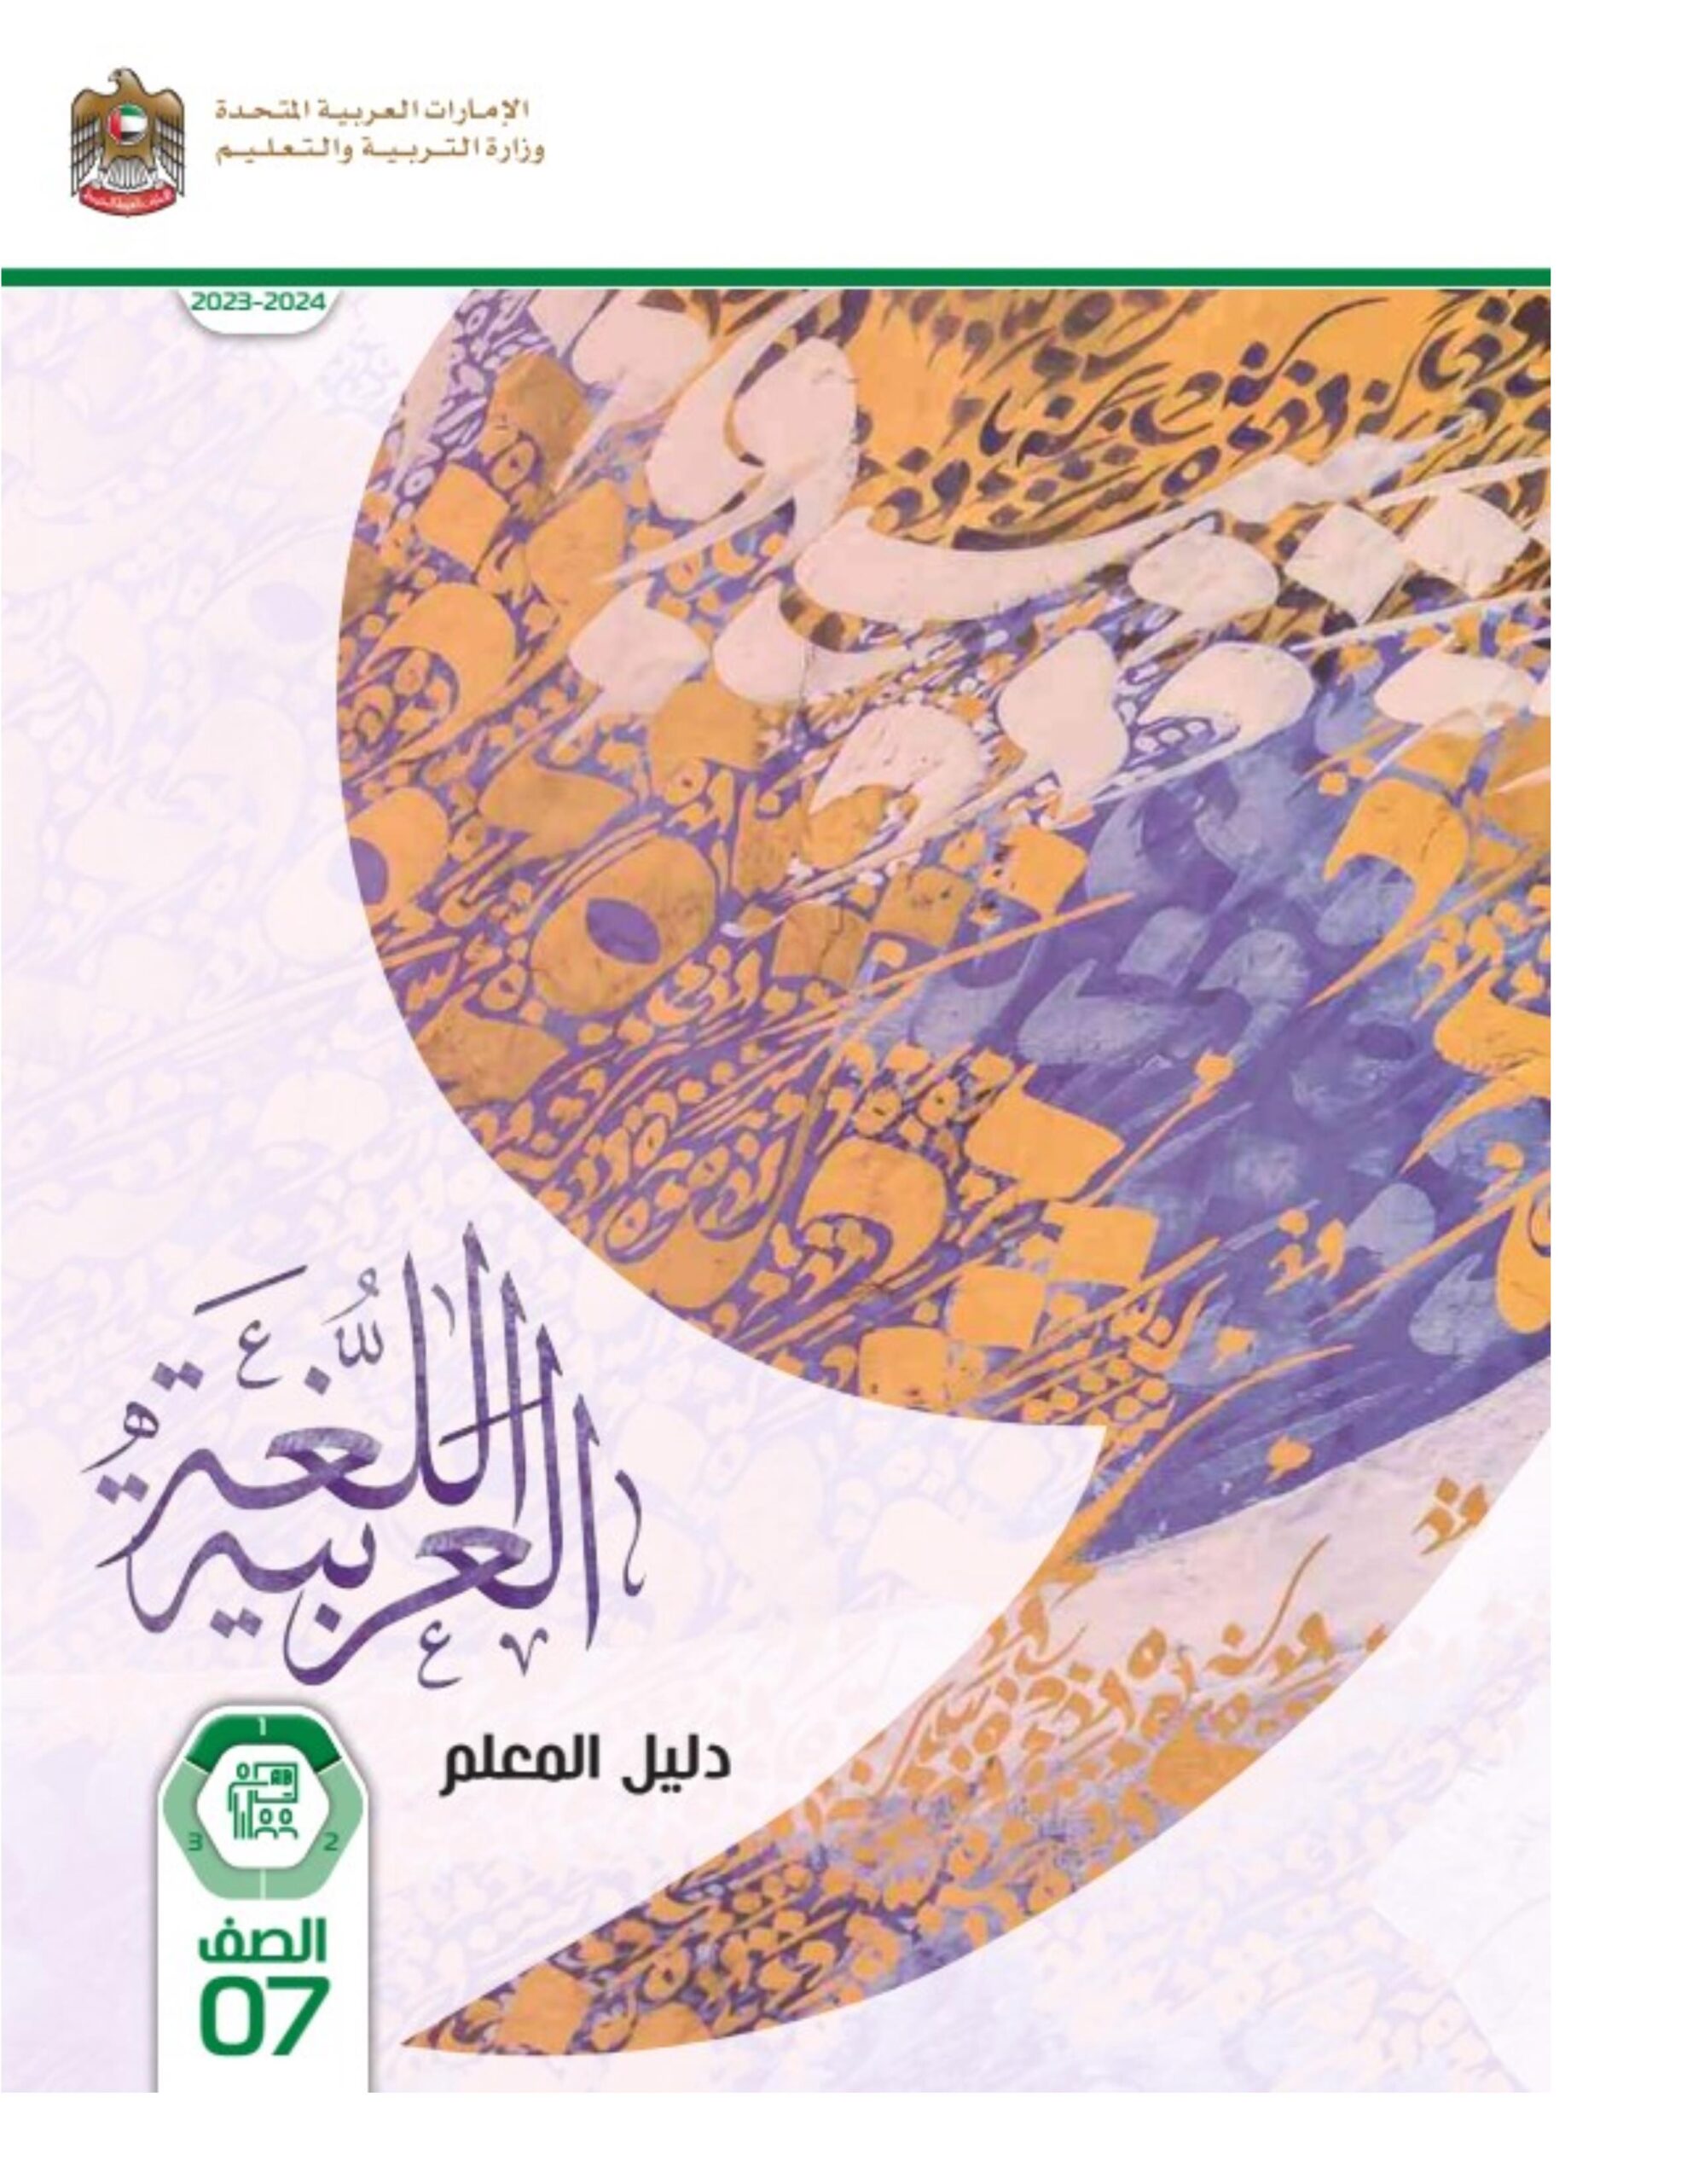 كتاب دليل المعلم اللغة العربية الصف السابع الفصل الدراسي الأول 2023-2024 نسخة مصورة